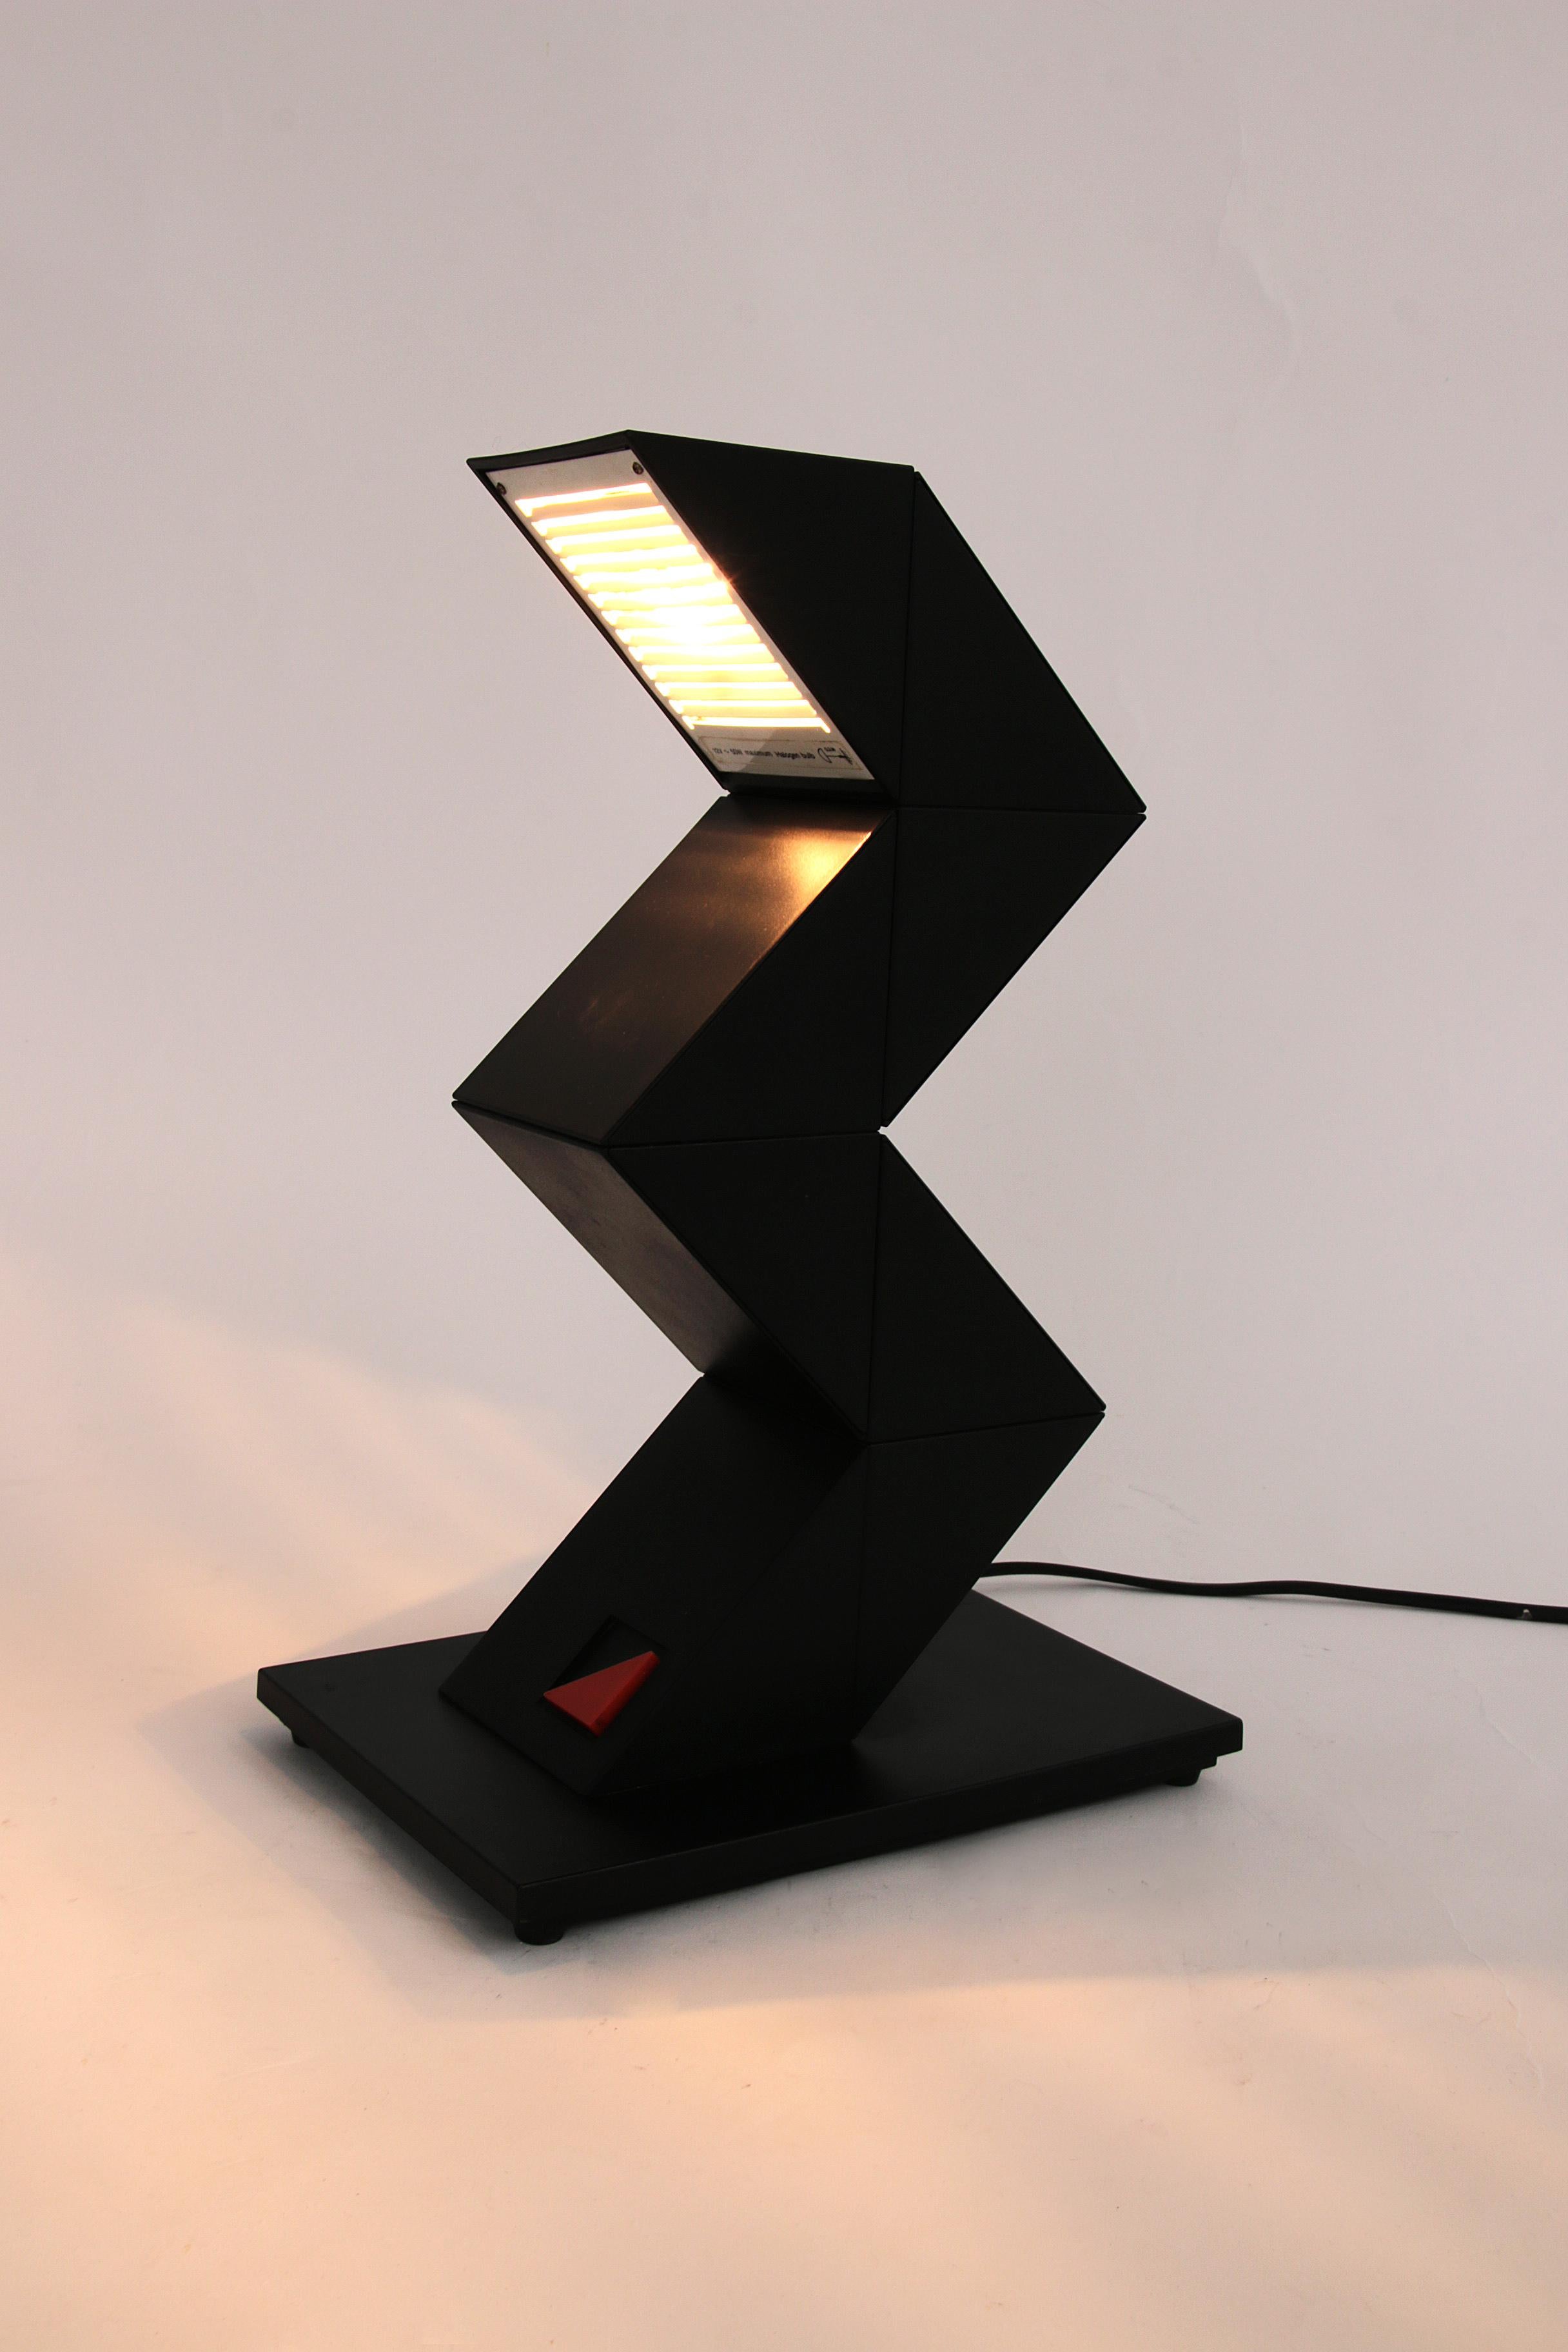 Découvrez la polyvalence de la lampe Massive Zig Zag, une pièce unique d'éclairage design des années 1980. Cette lampe en plastique noir n'attire pas seulement l'attention, elle est aussi très fonctionnelle grâce à ses 8 éléments triangulaires